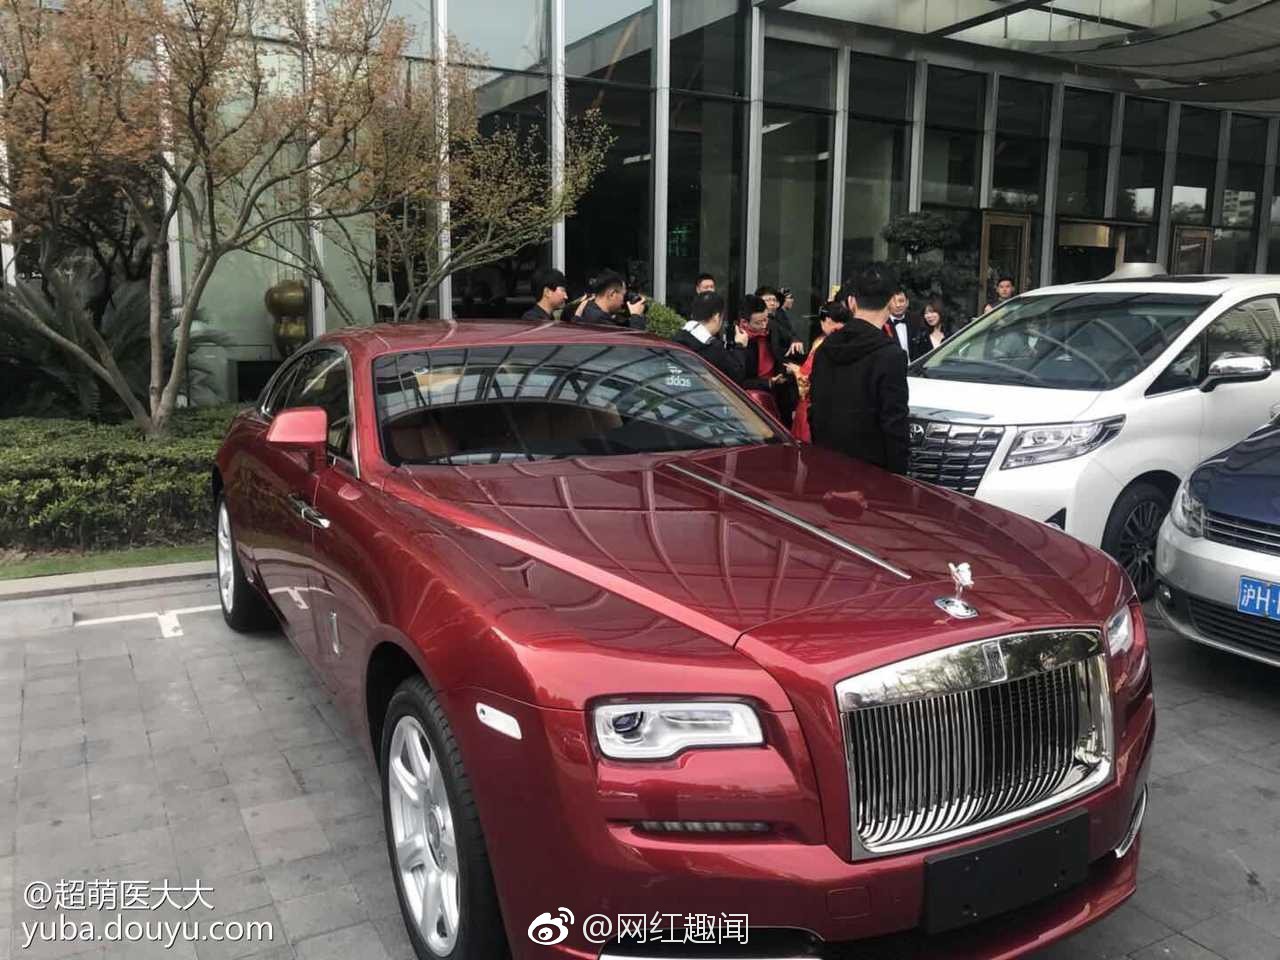 Đám cưới hot nhất hôm nay: Thiếu gia giàu nhất Trung Quốc làm phù rể, tặng nóng cô dâu chú rể 1 chiếc Rolls Royce - Ảnh 10.